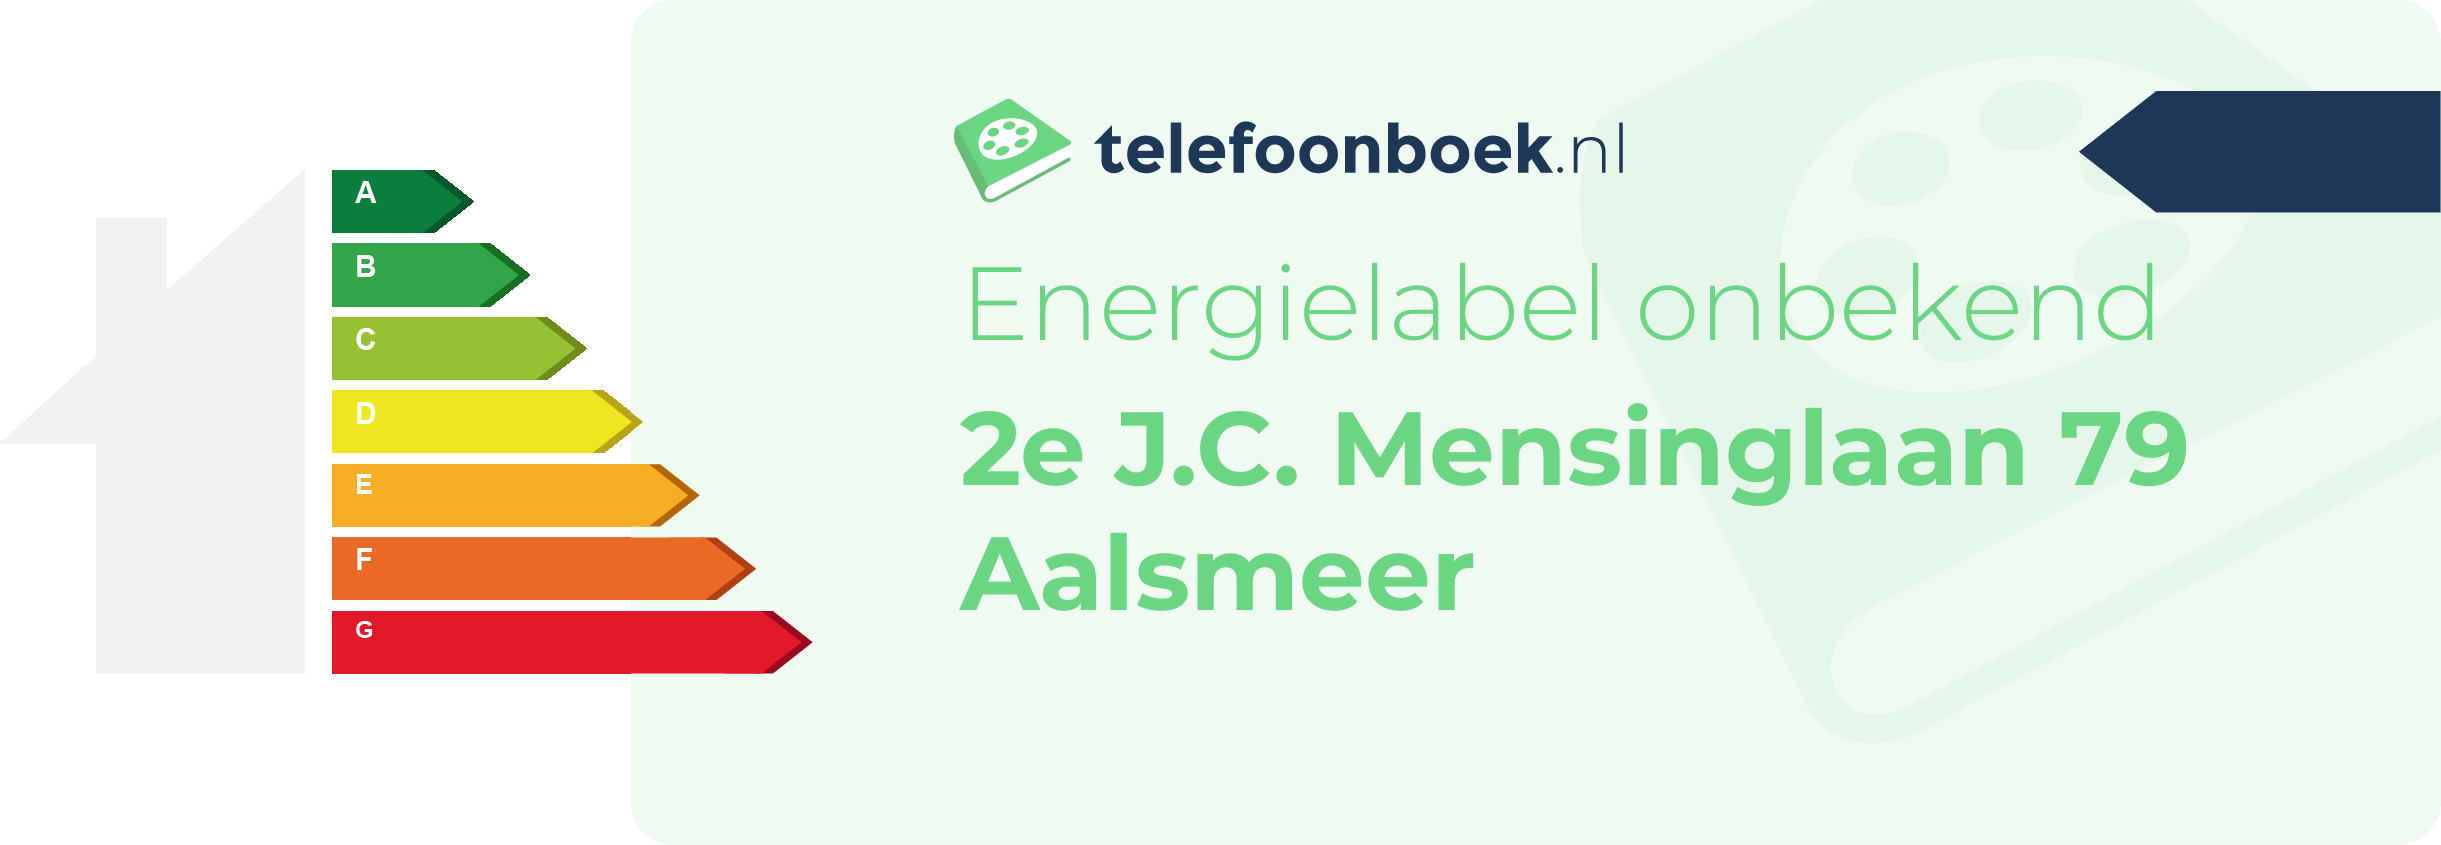 Energielabel 2e J.C. Mensinglaan 79 Aalsmeer